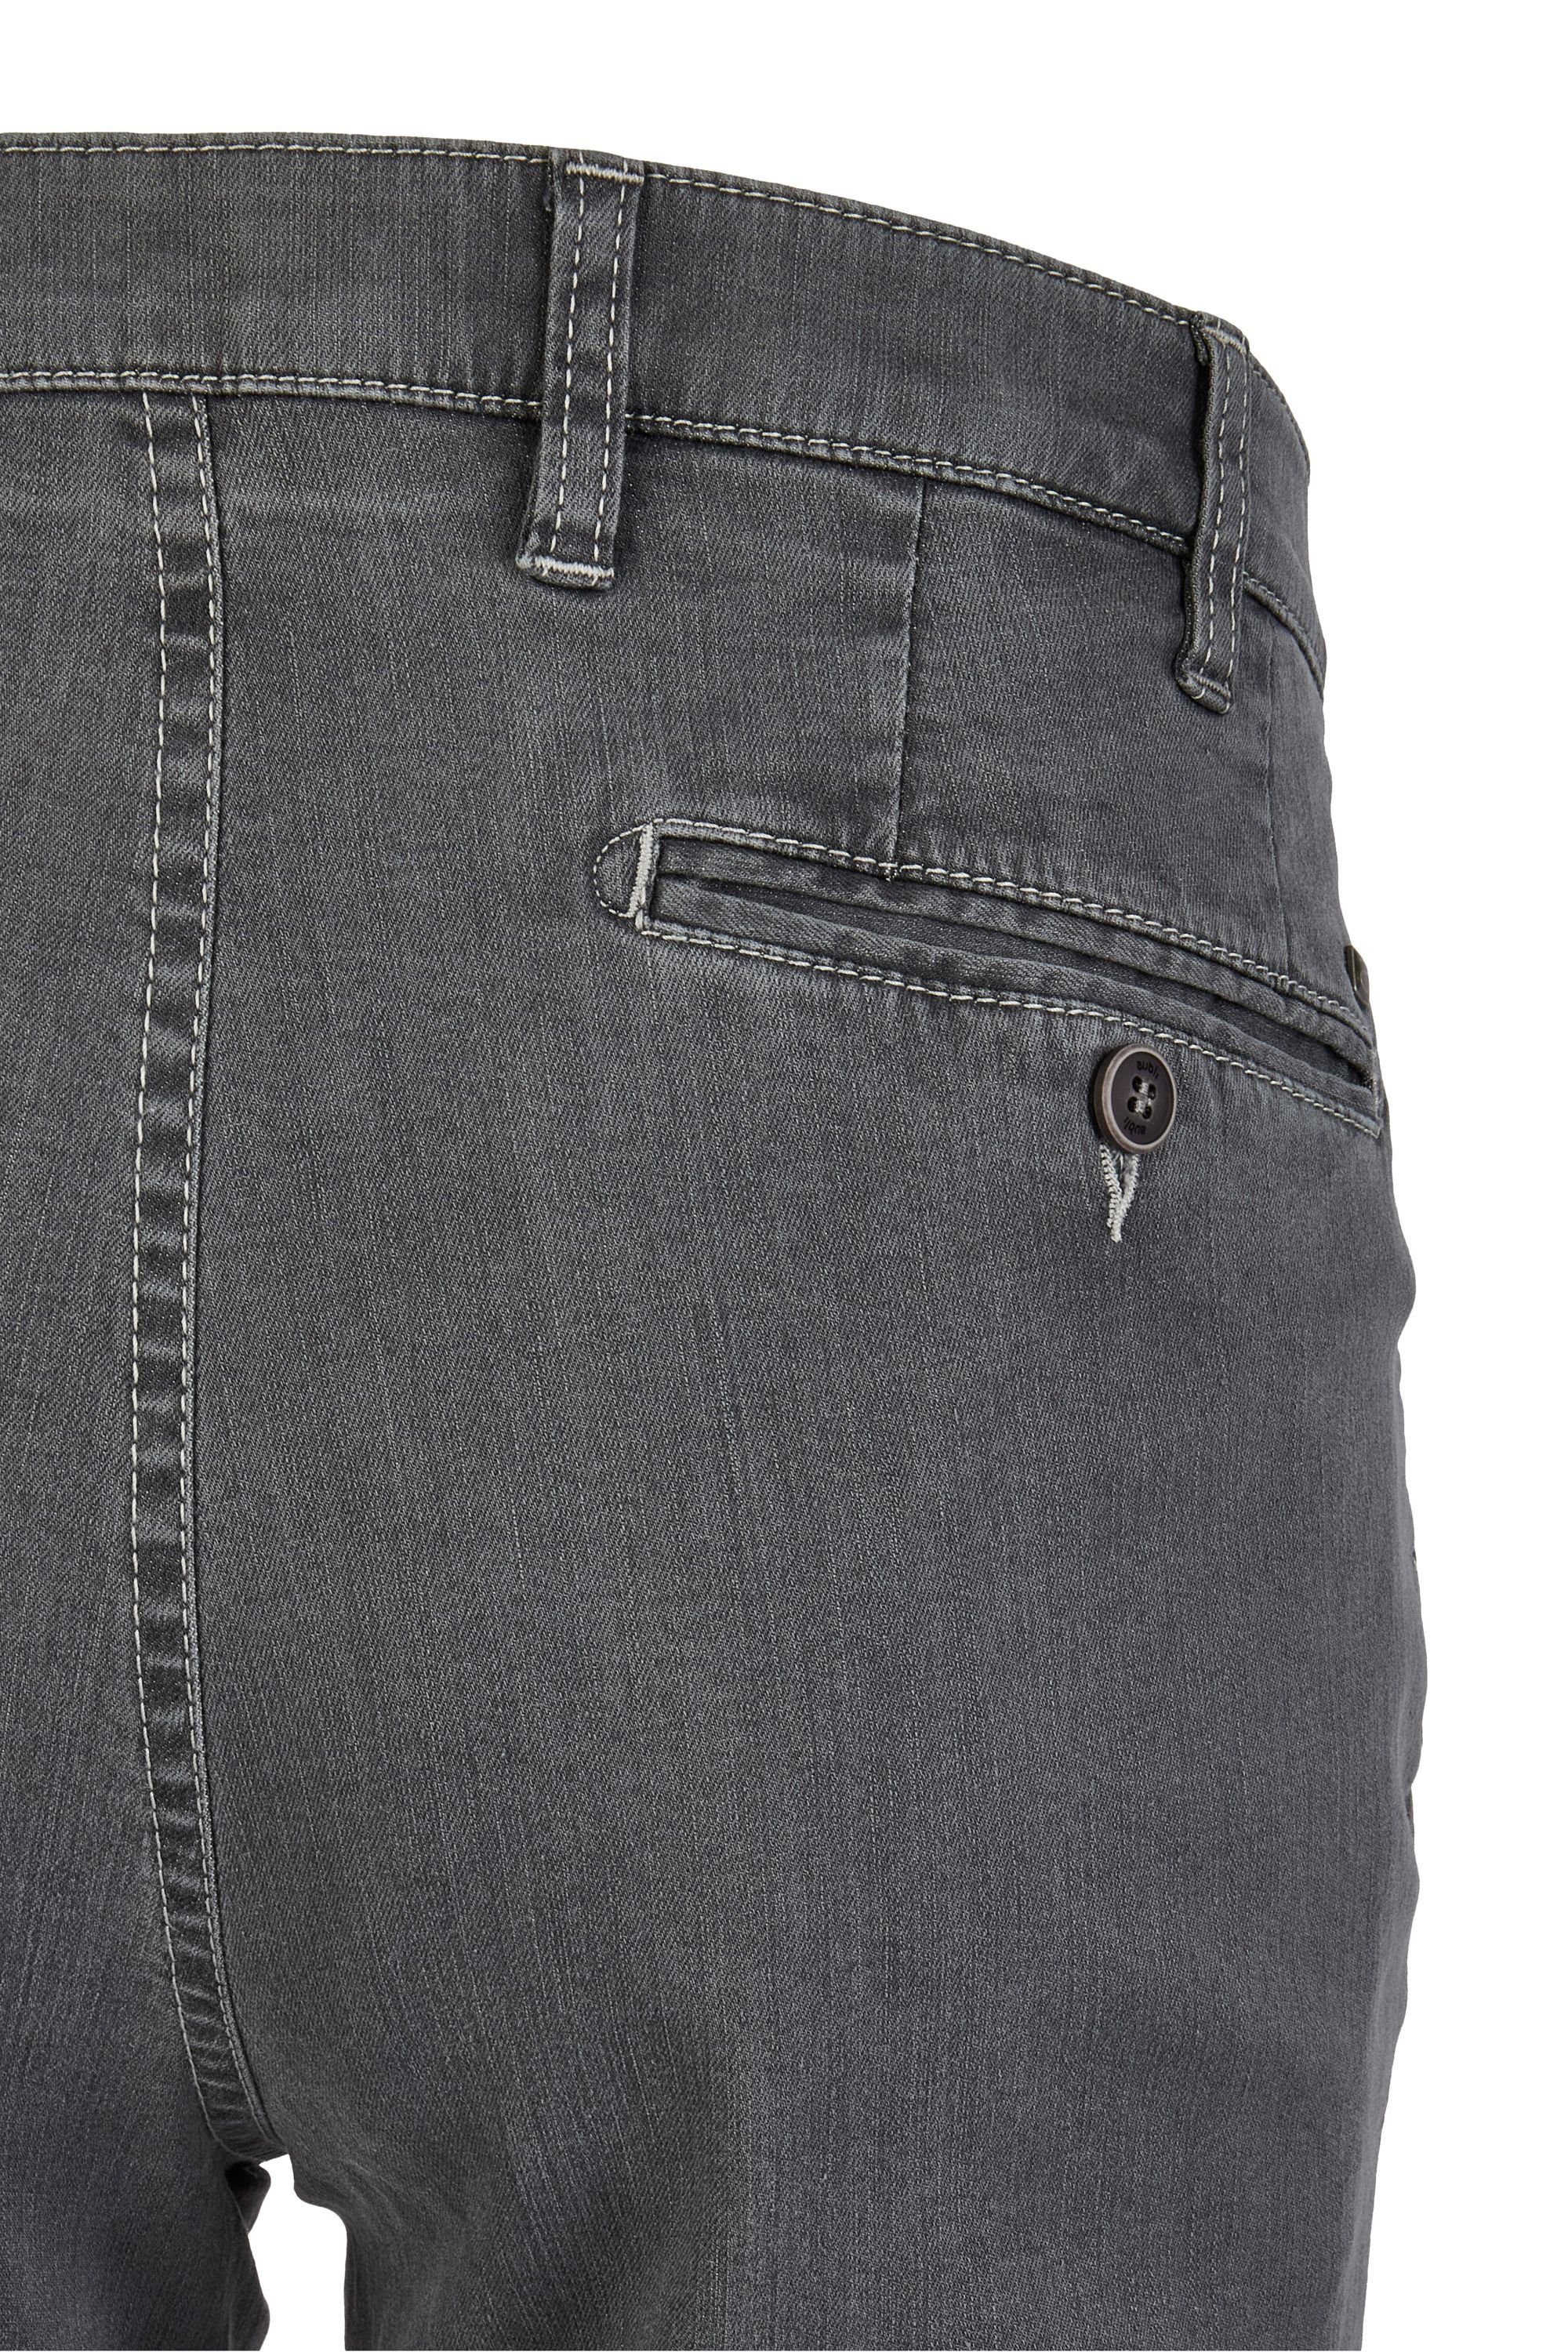 Fit Stretch Perfect Modell Herren High Jeans Bequeme (54) aus aubi: aubi grey Jeans Sommer Flex Baumwolle 526 Hose